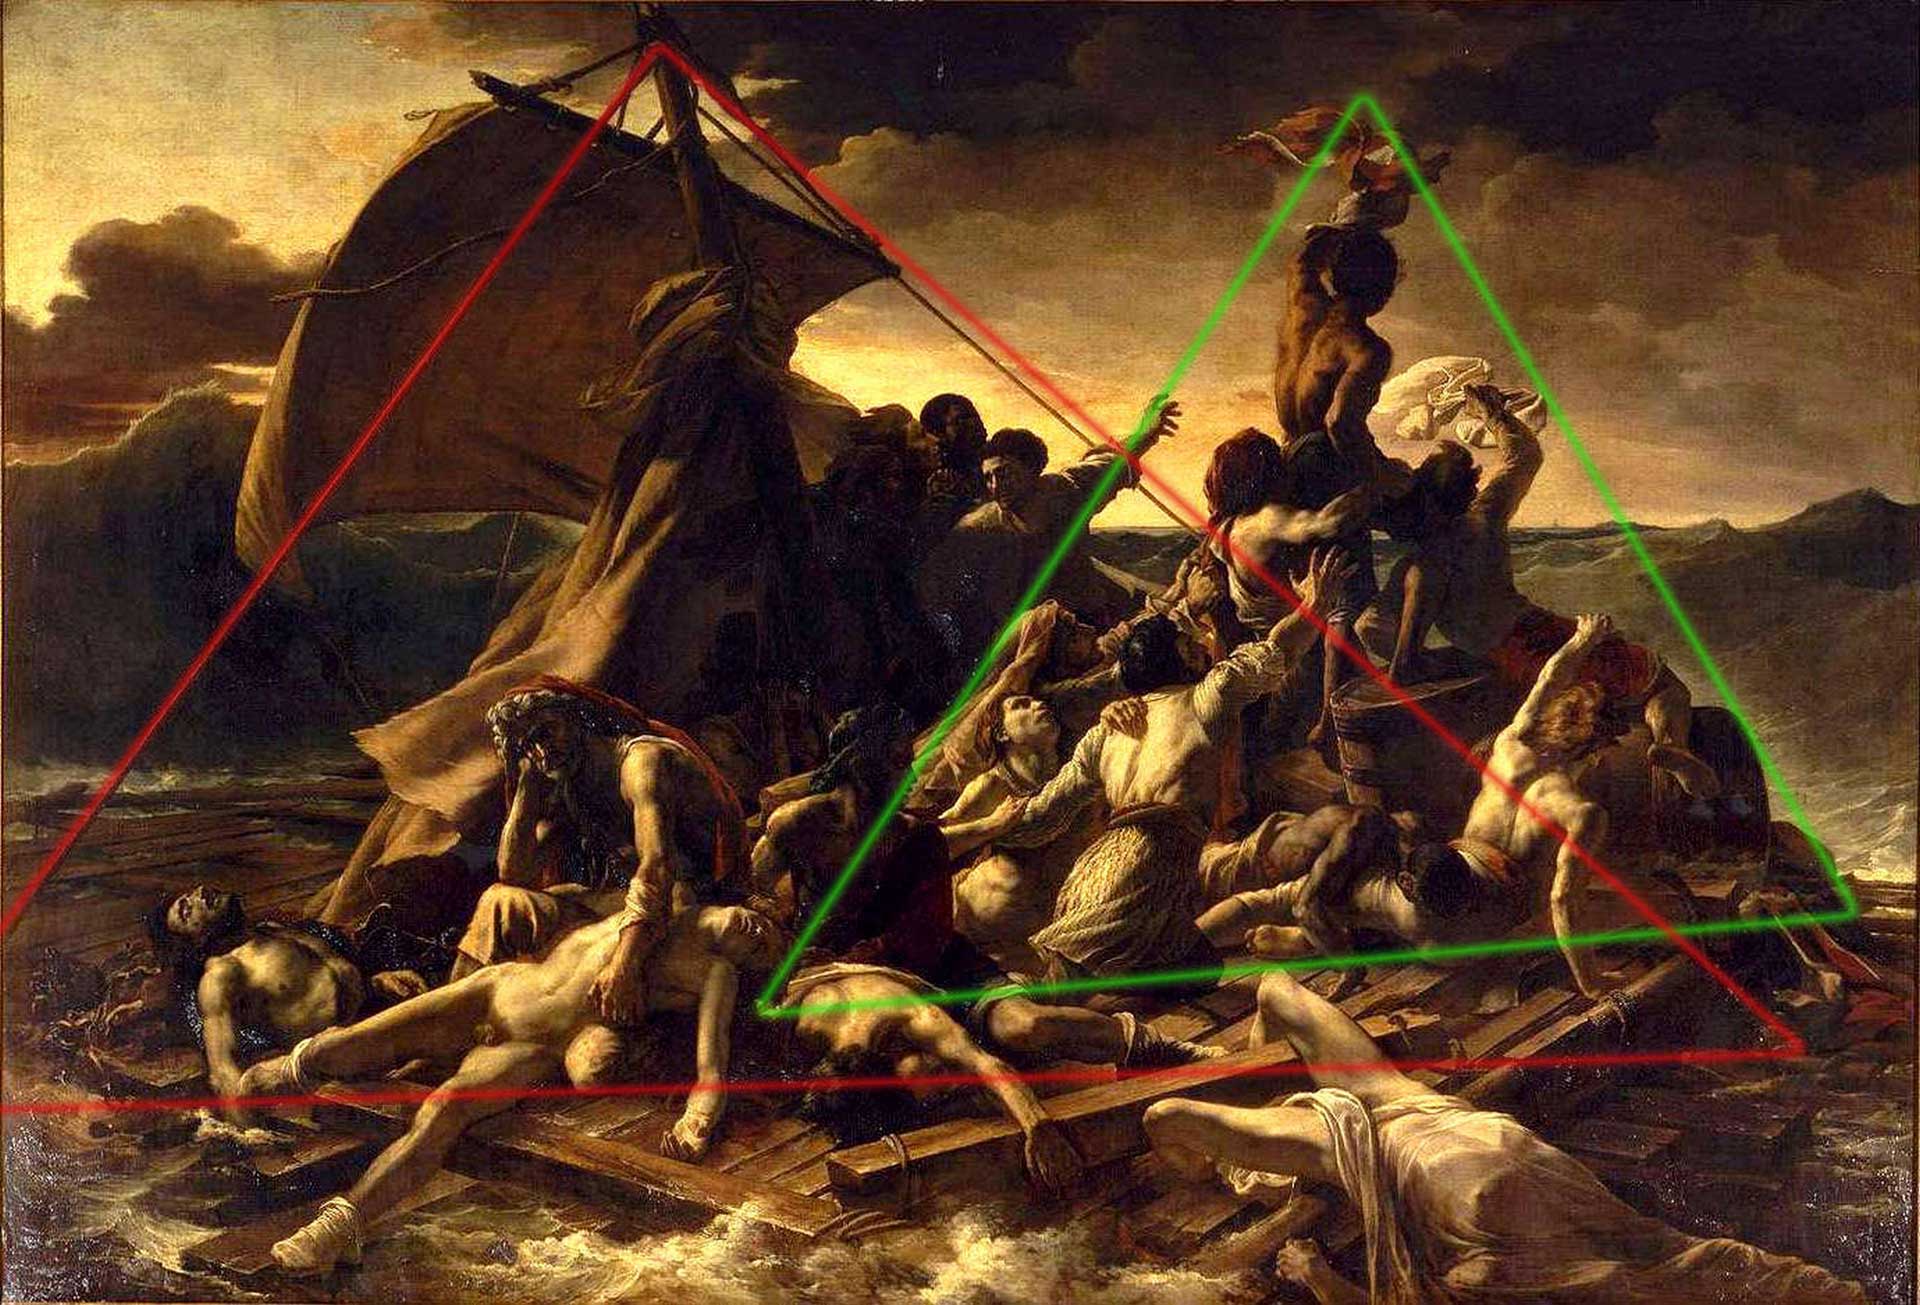 Analyse d'une oeuvre : Le radeau de la Méduse de Géricault